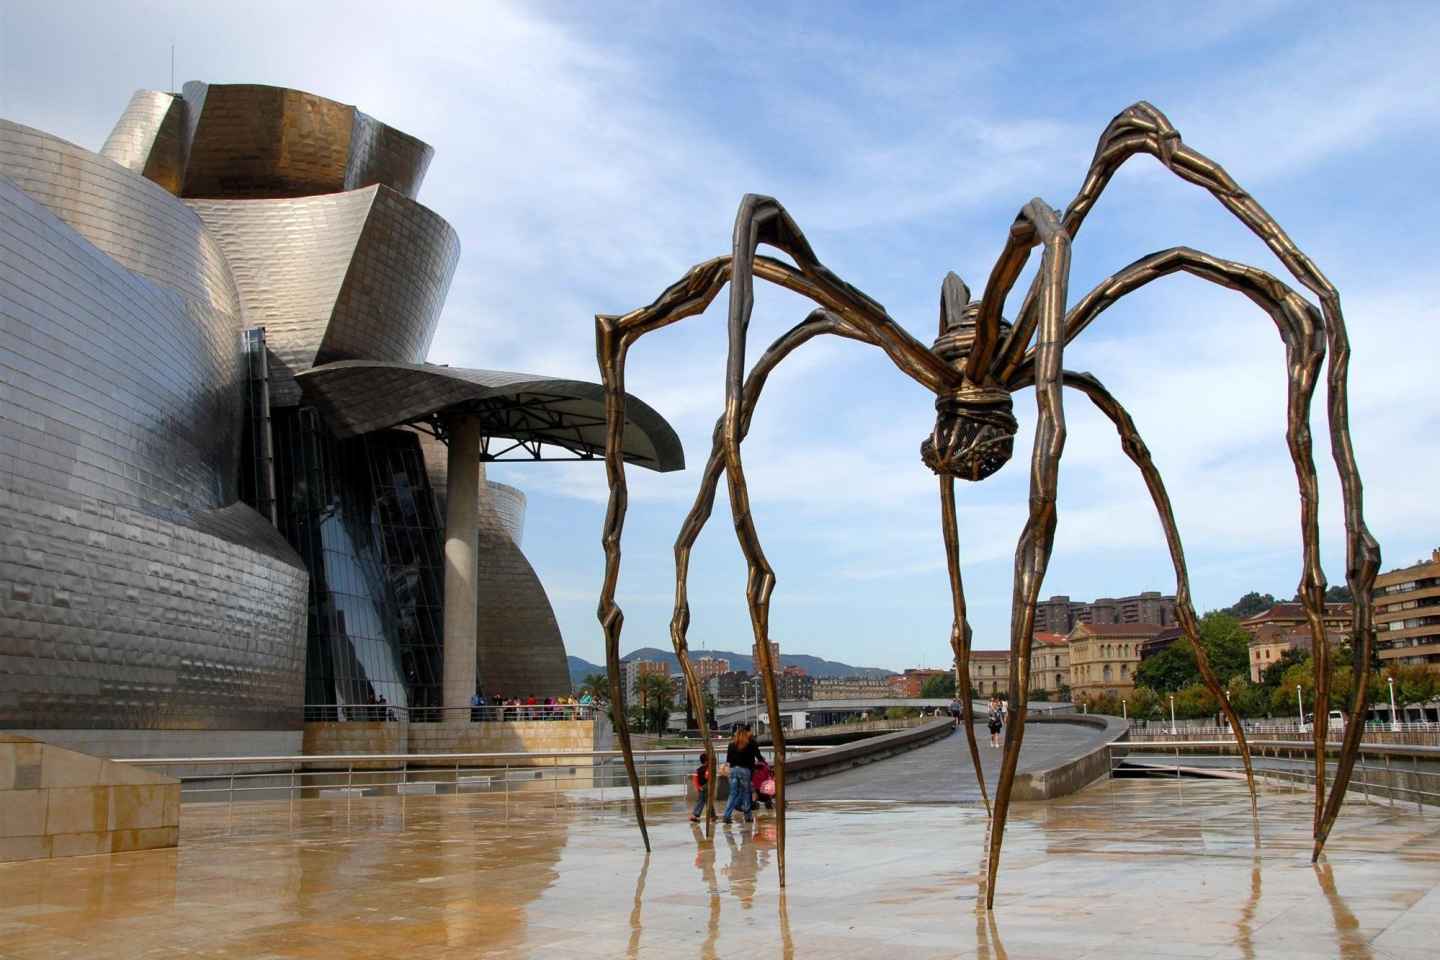 Bilbao: Private Führung im Guggenheim-Museum